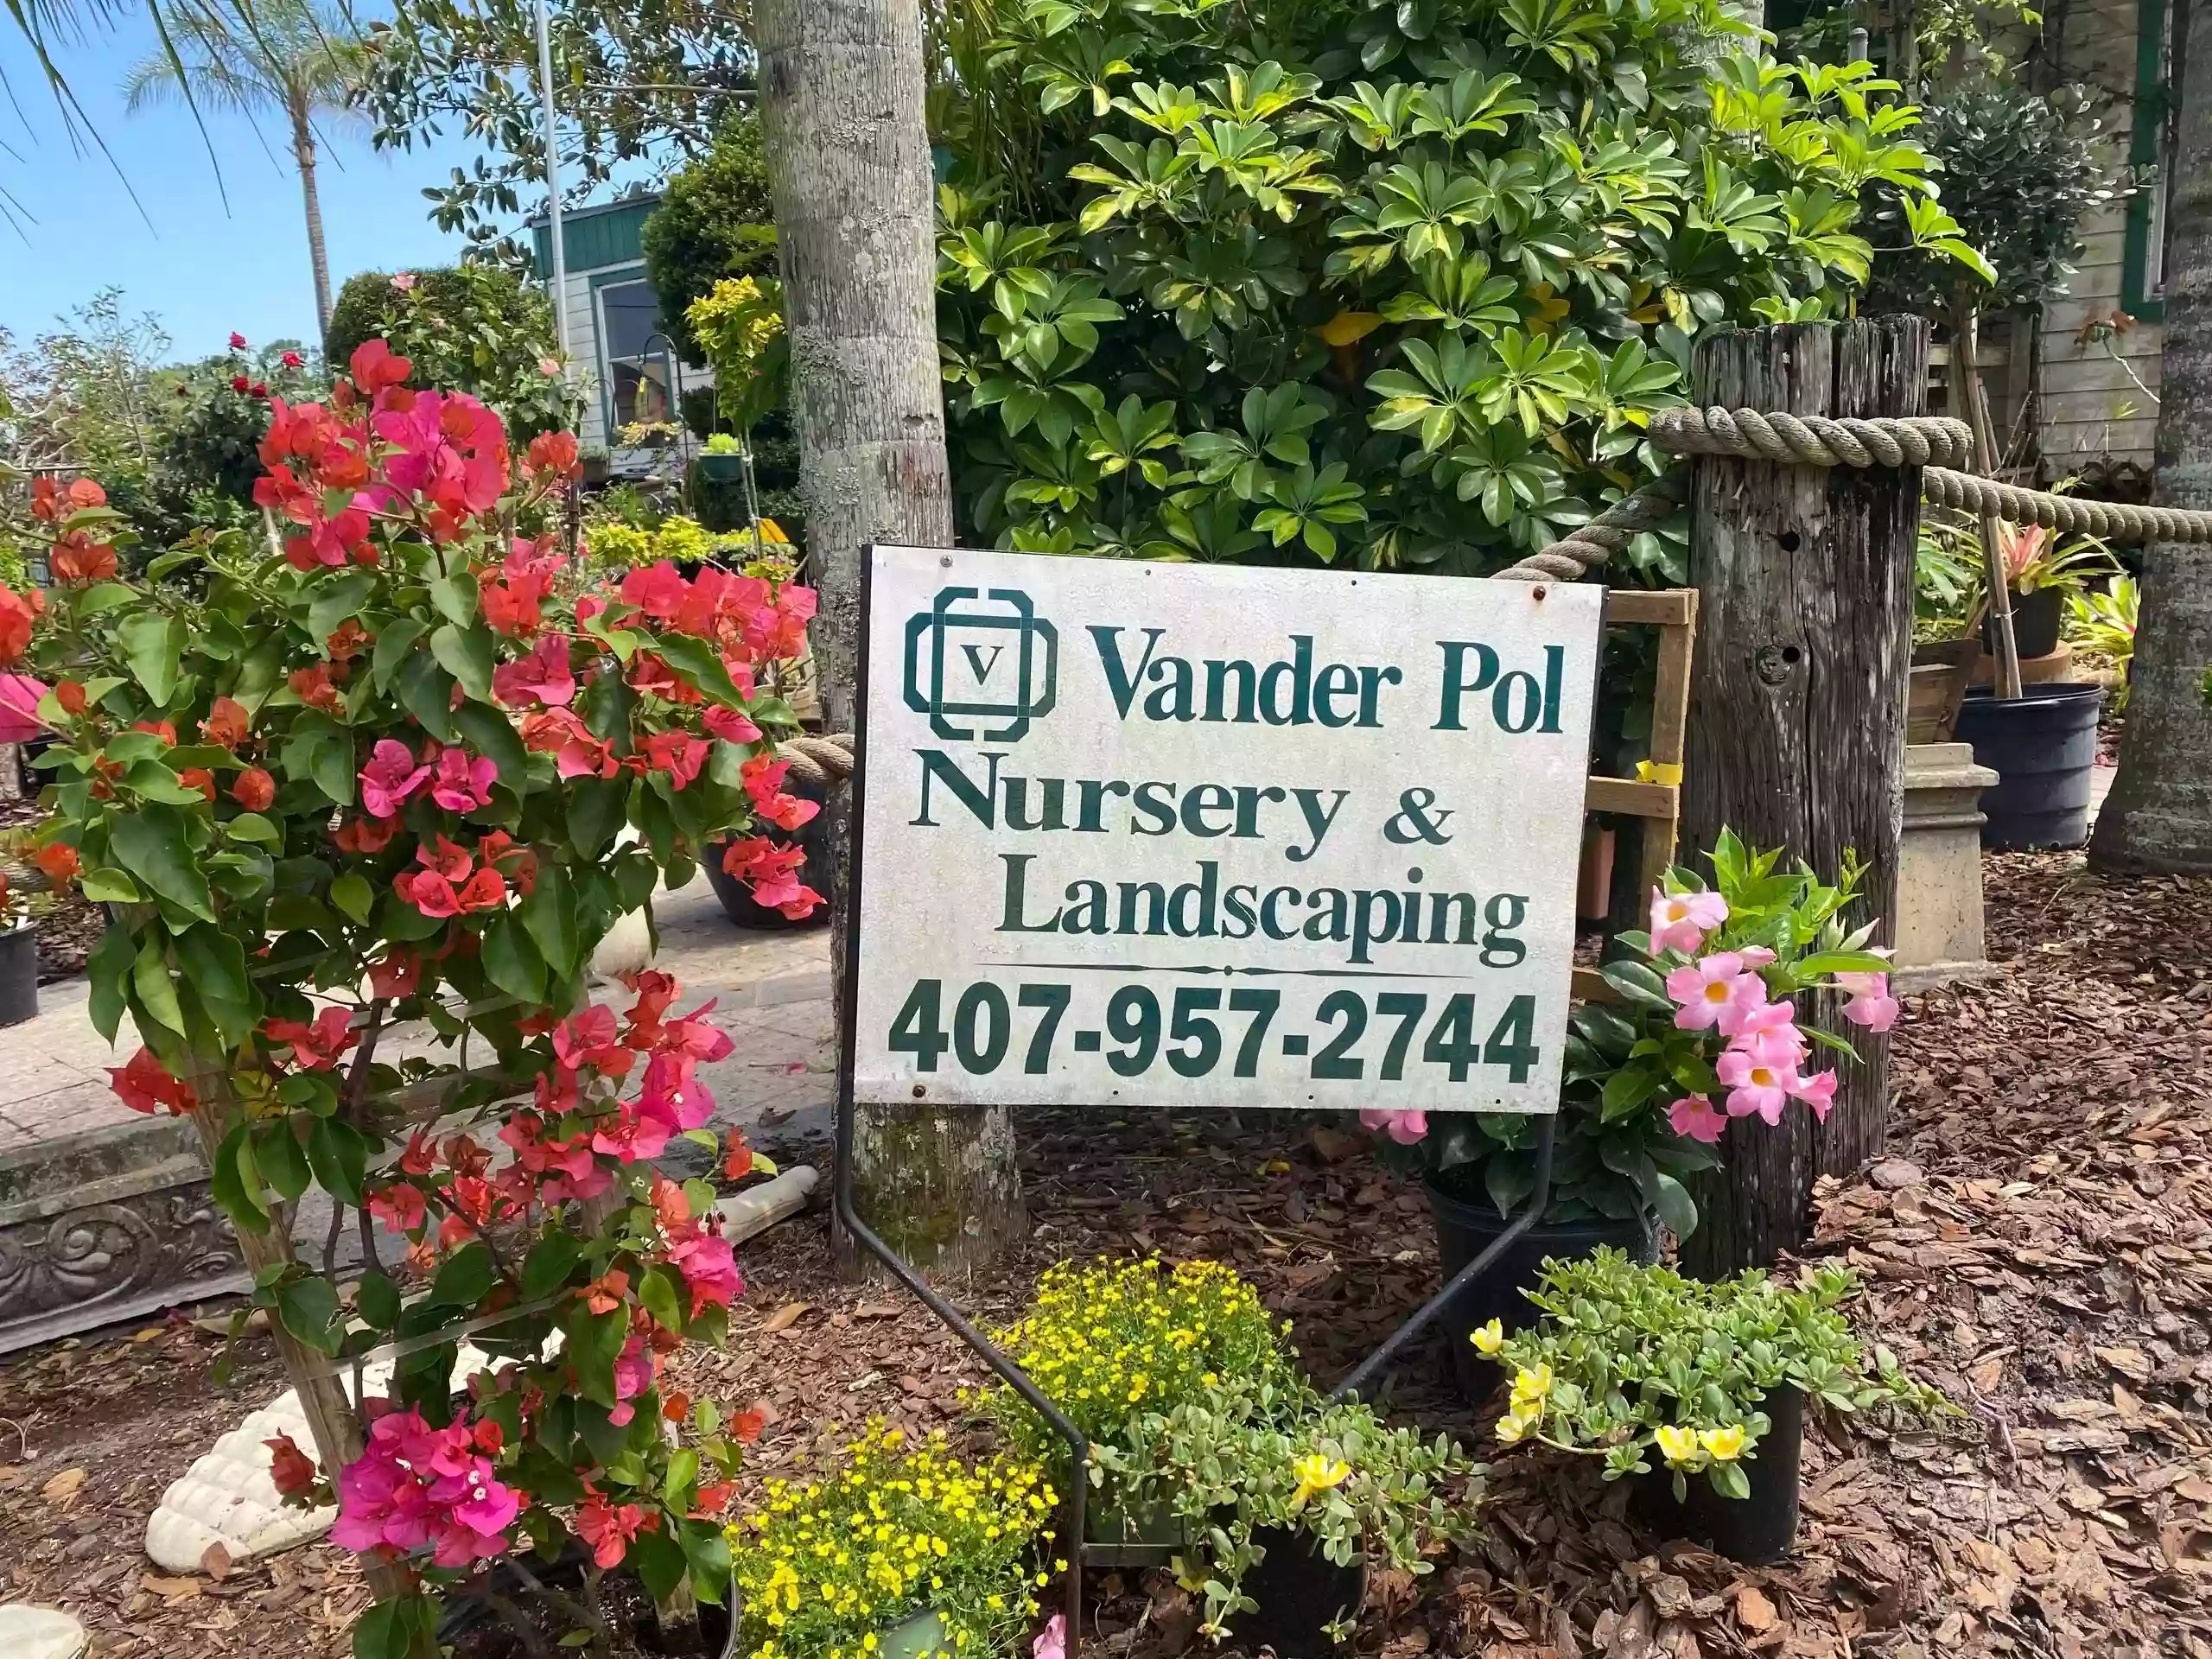 Vander Pol Nursery